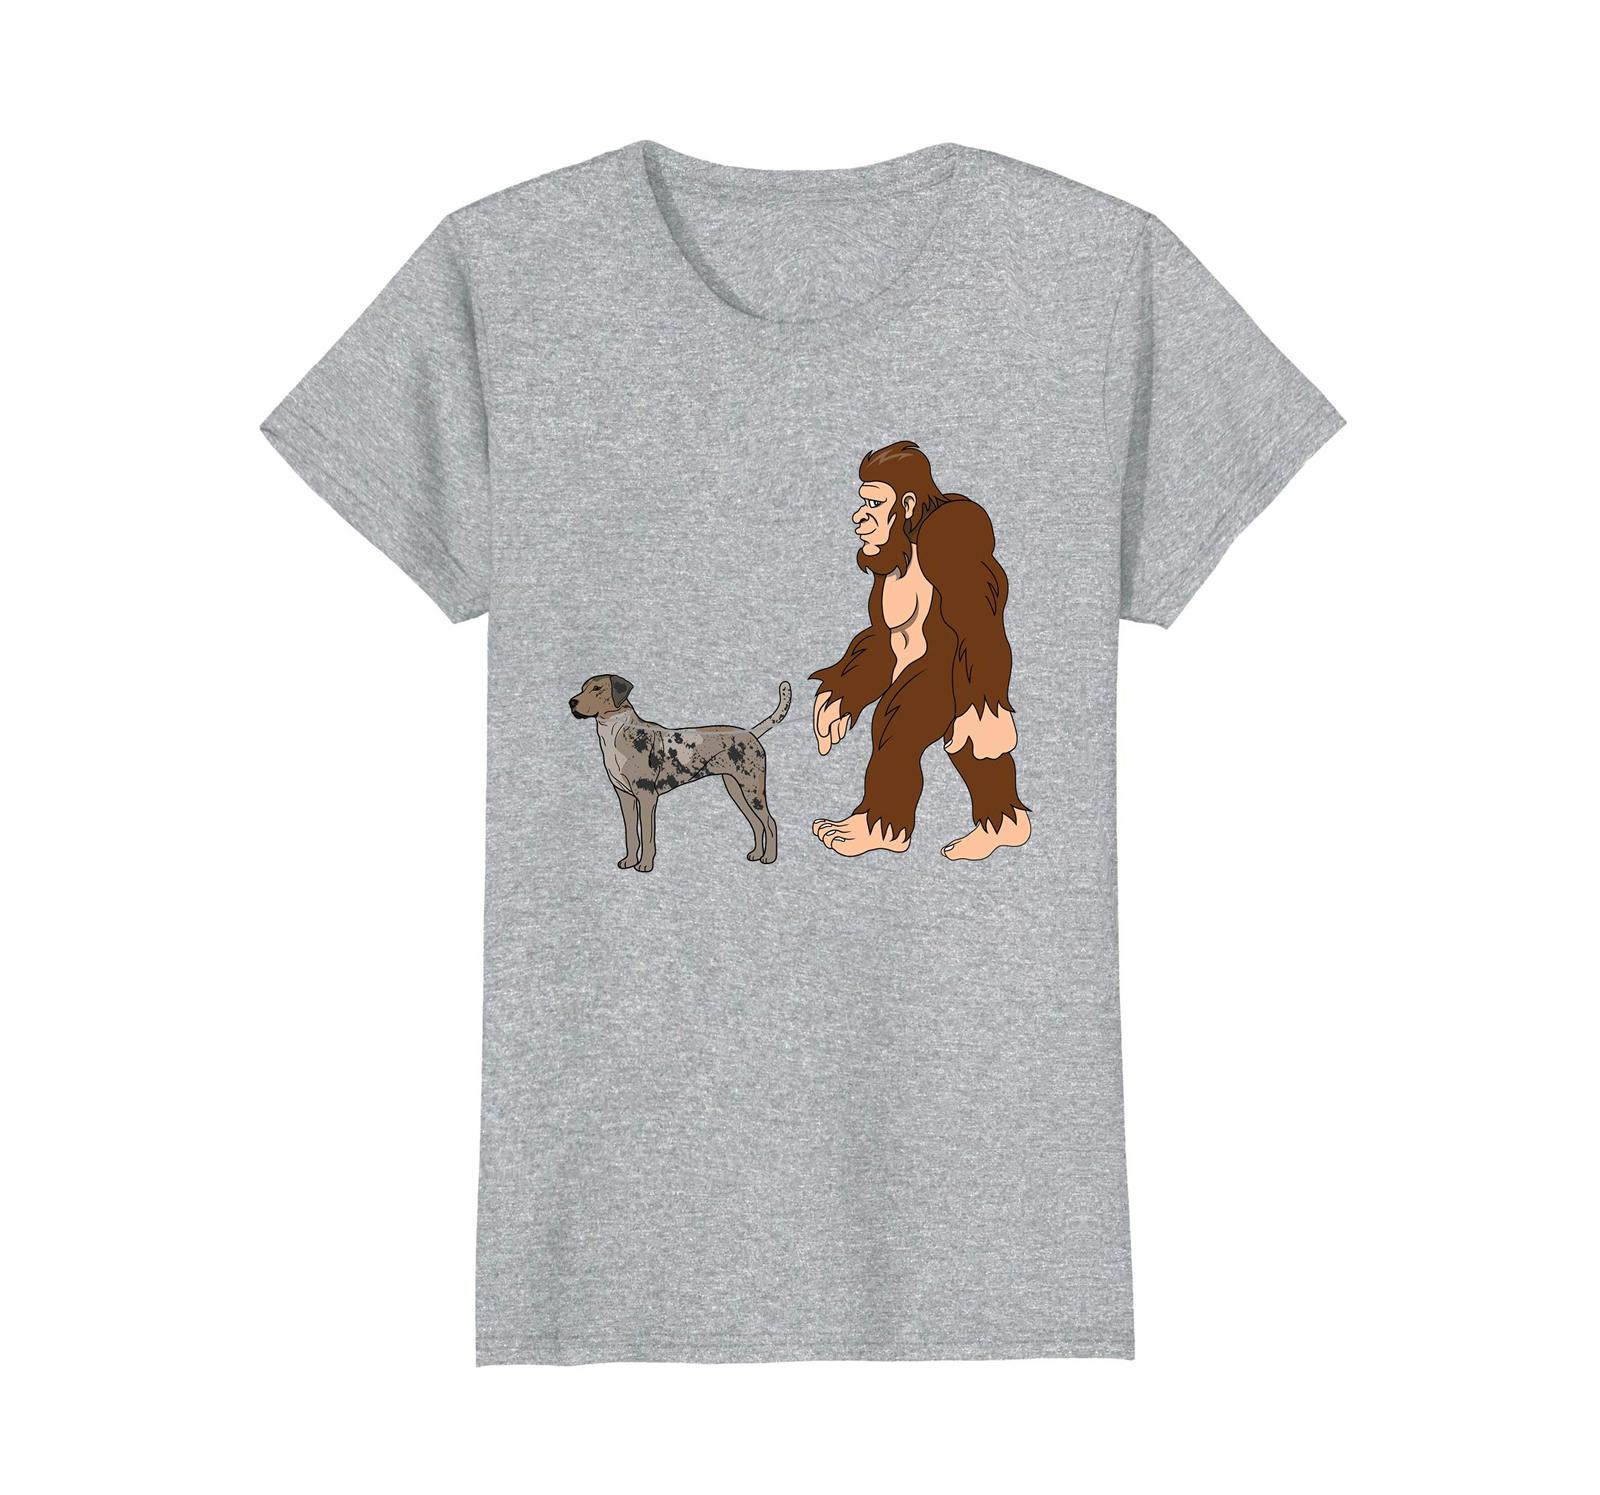 Dog Fashion - Bigfoot Walking Catahoula Leopard Dog Shirt UFO Believer Wowen